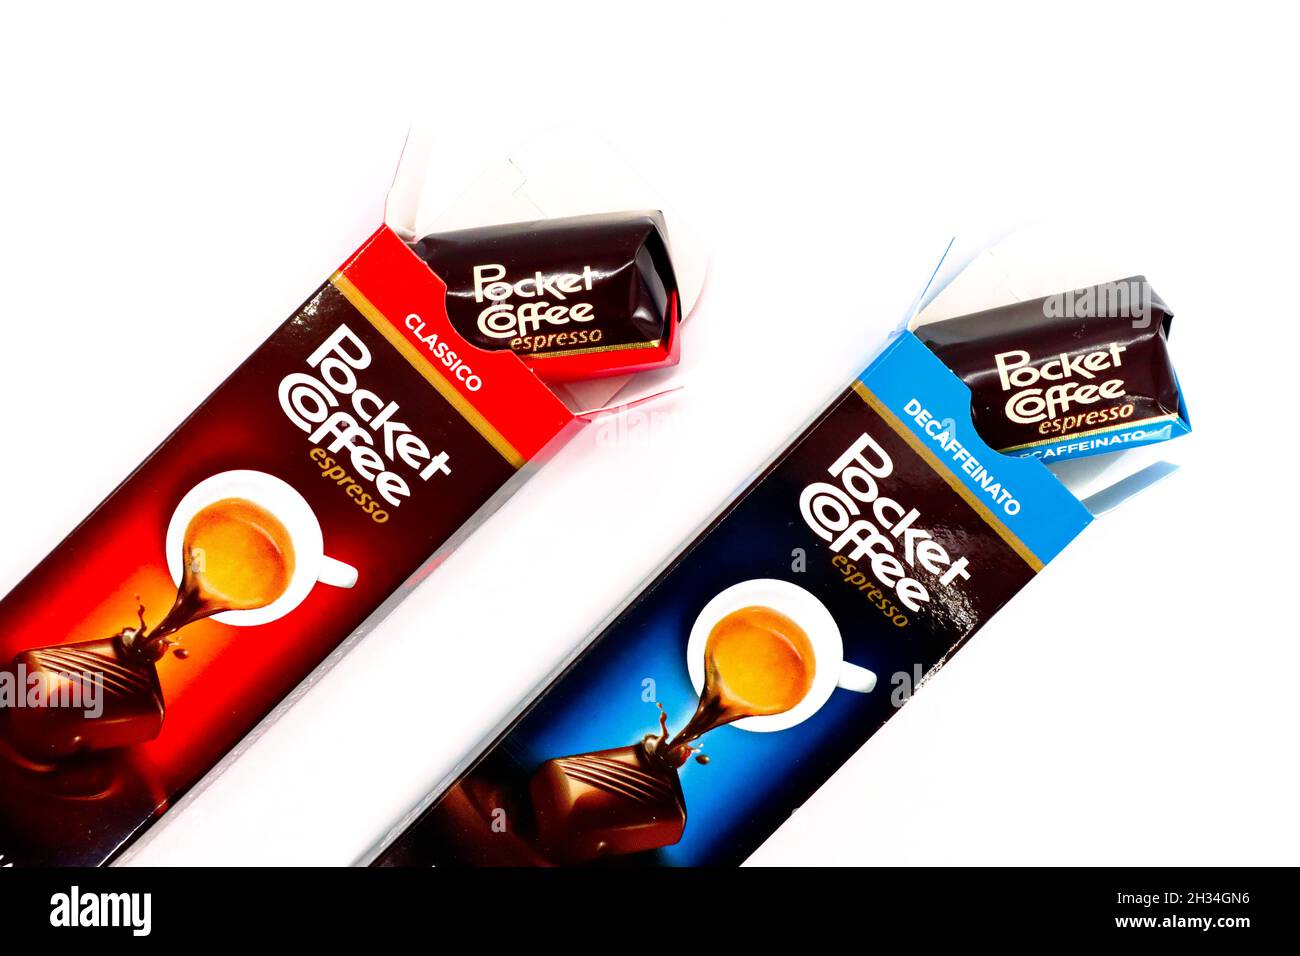 Ferrero Pocket Coffee Espresso Classico 400 Grams is not halal